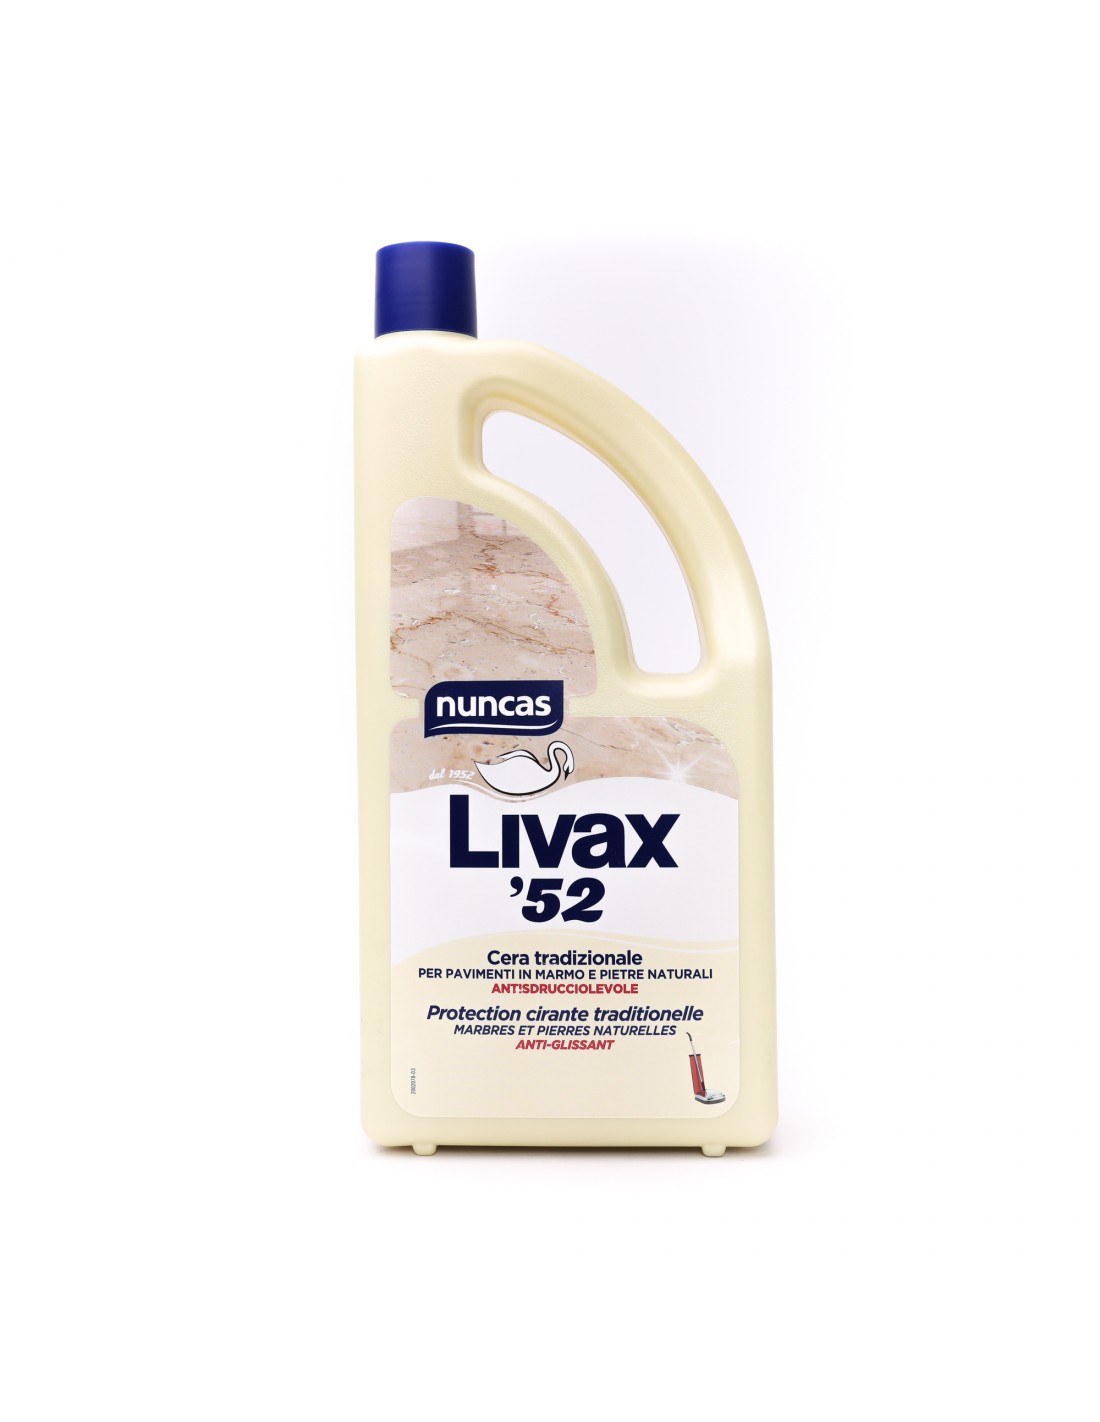 Nuncas Livax 52 Wax for marble and graniglia